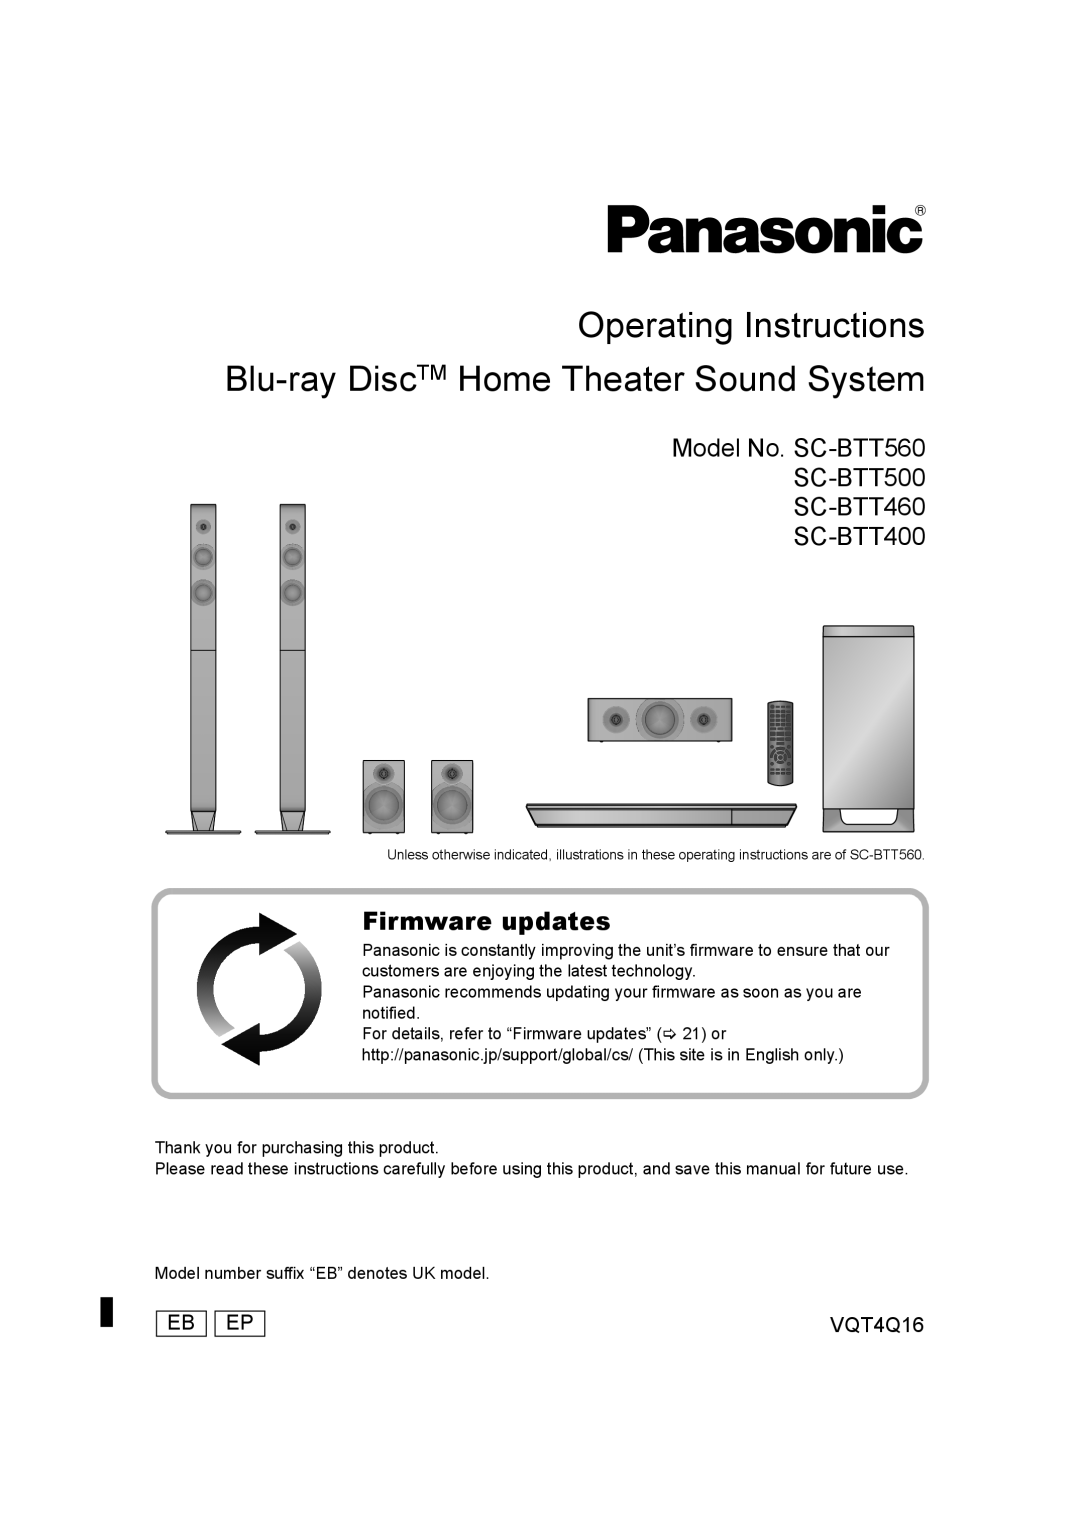 Panasonic manual Model No. SC-BTT560 SC-BTT500 SC-BTT460 SC-BTT400, Firmware updates, Eb Ep, VQT4Q16 